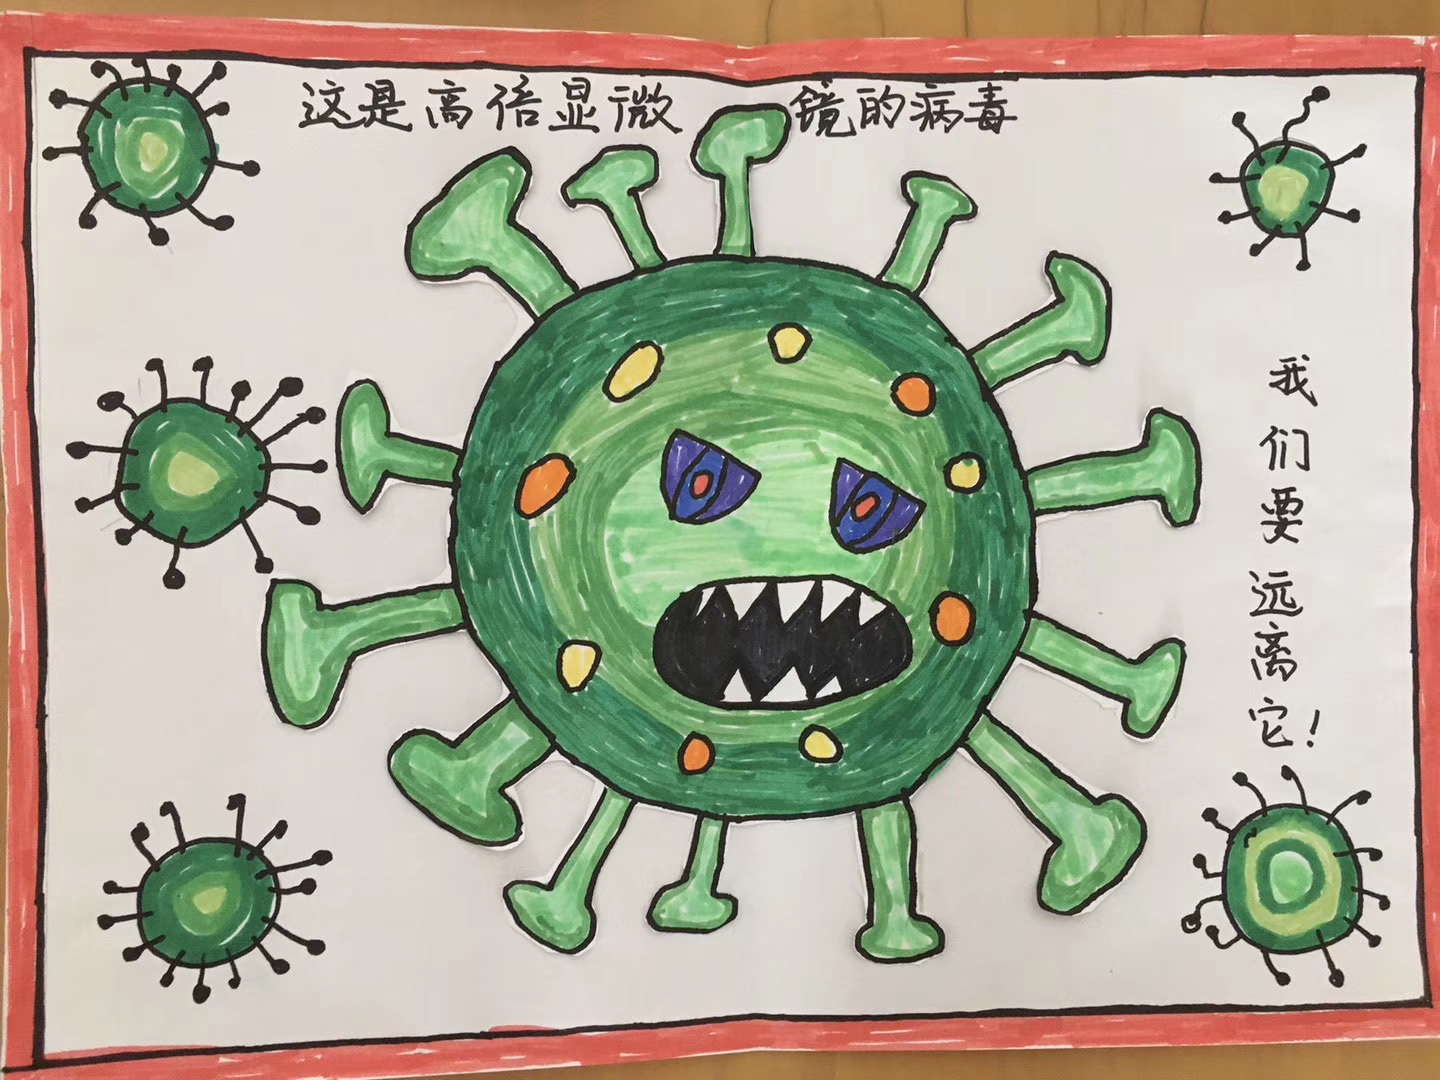 一年级预防病毒手绘画图片